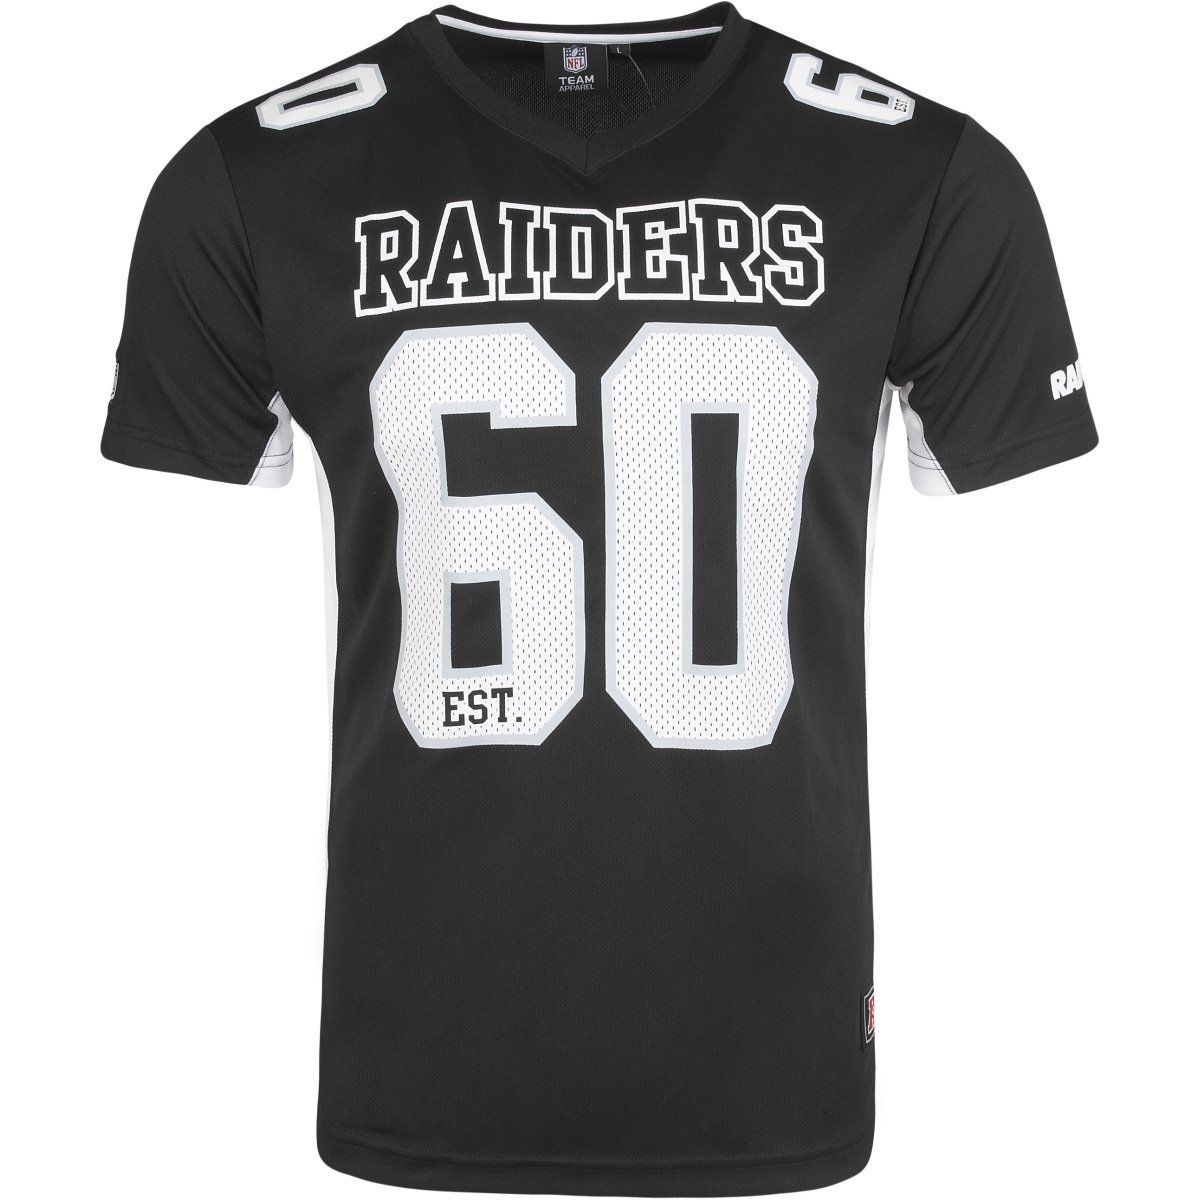 amfoo - Majestic NFL Mesh Polyester Jersey Shirt - Oakland Raiders